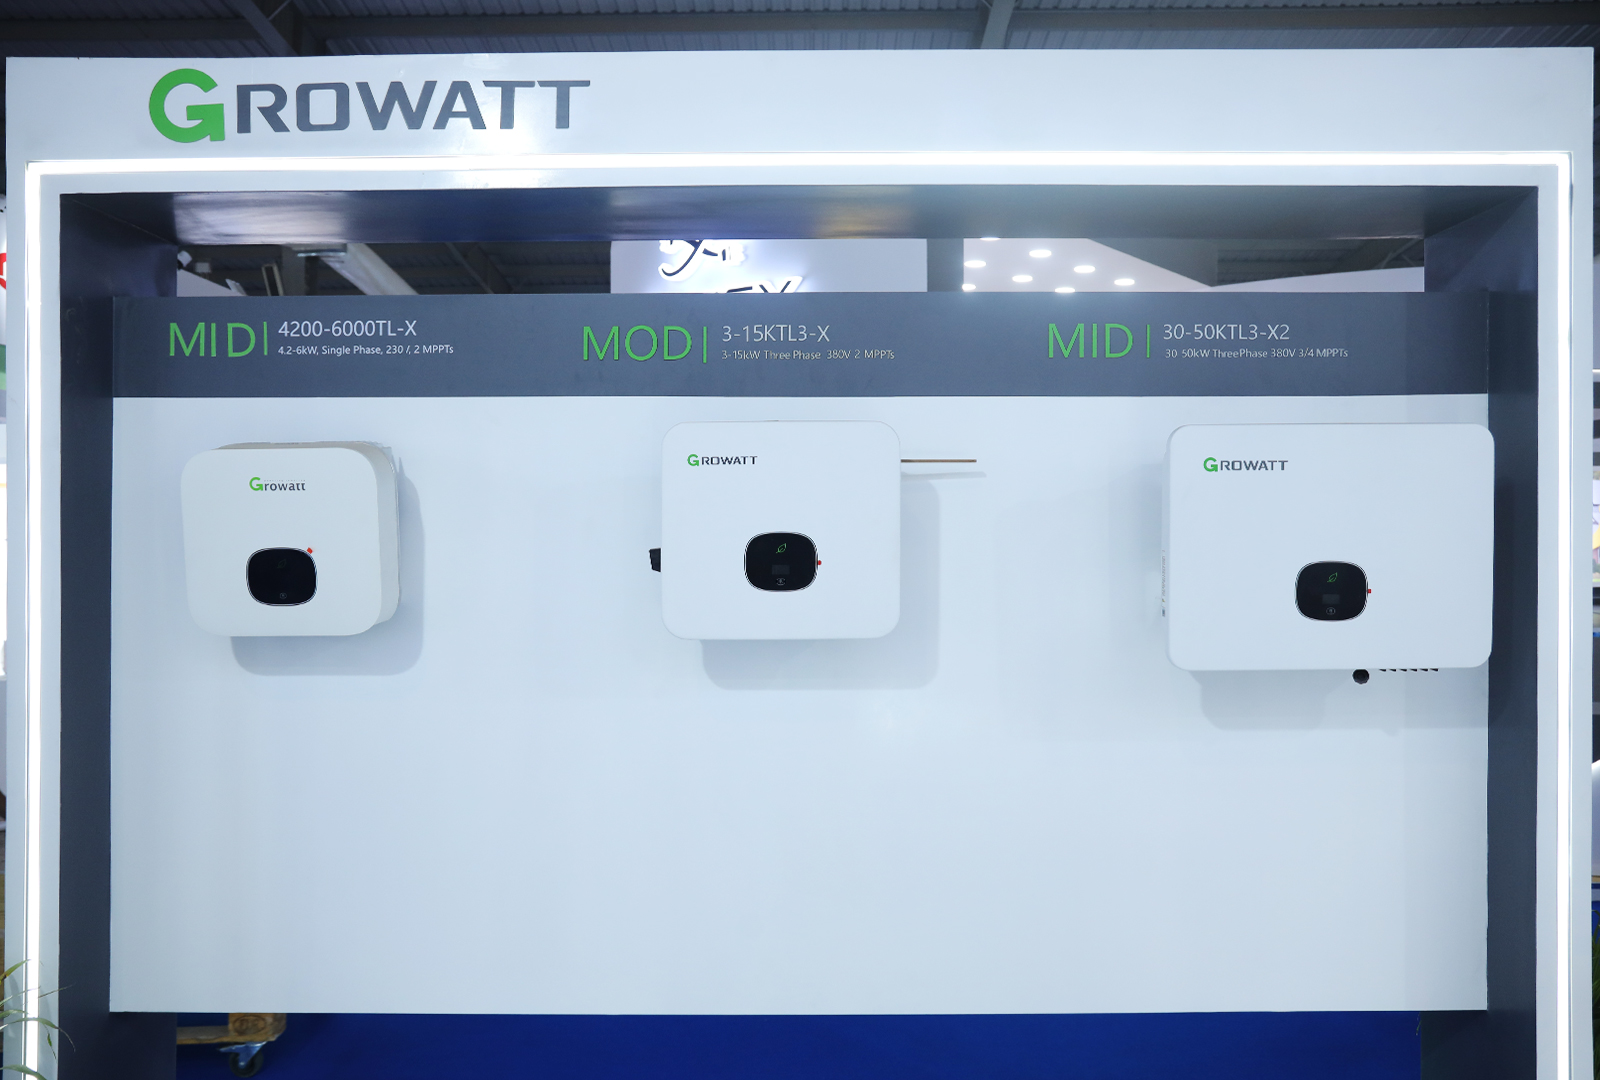 Growatt exhibits  MID 33-50KTL3-X2 at Intersolar India 2022.jpg